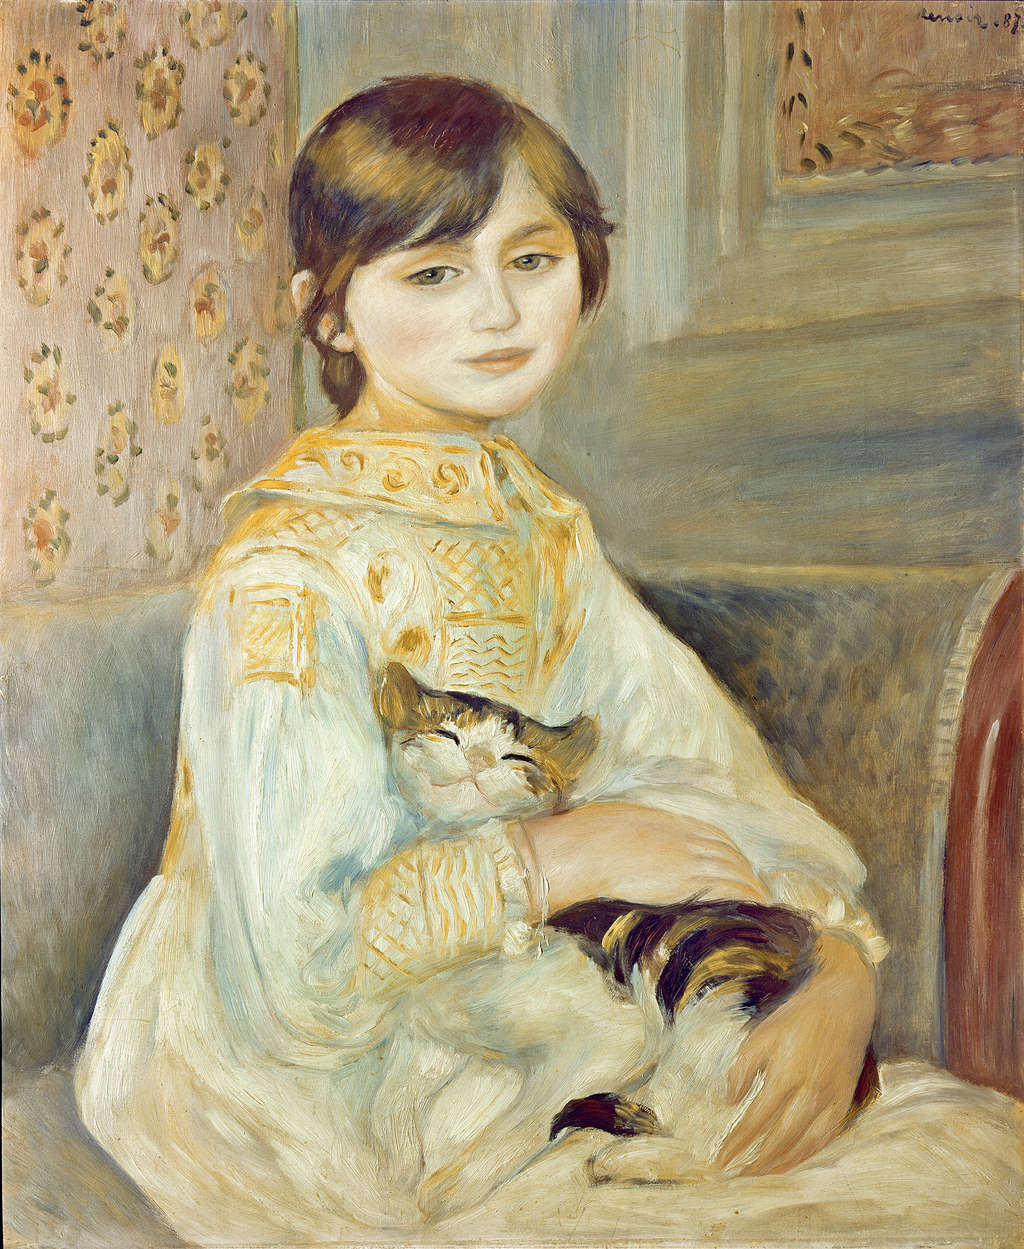             Fototapete "Mademoiselle Julie mit Katze" von Pierre Auguste Renoir
        